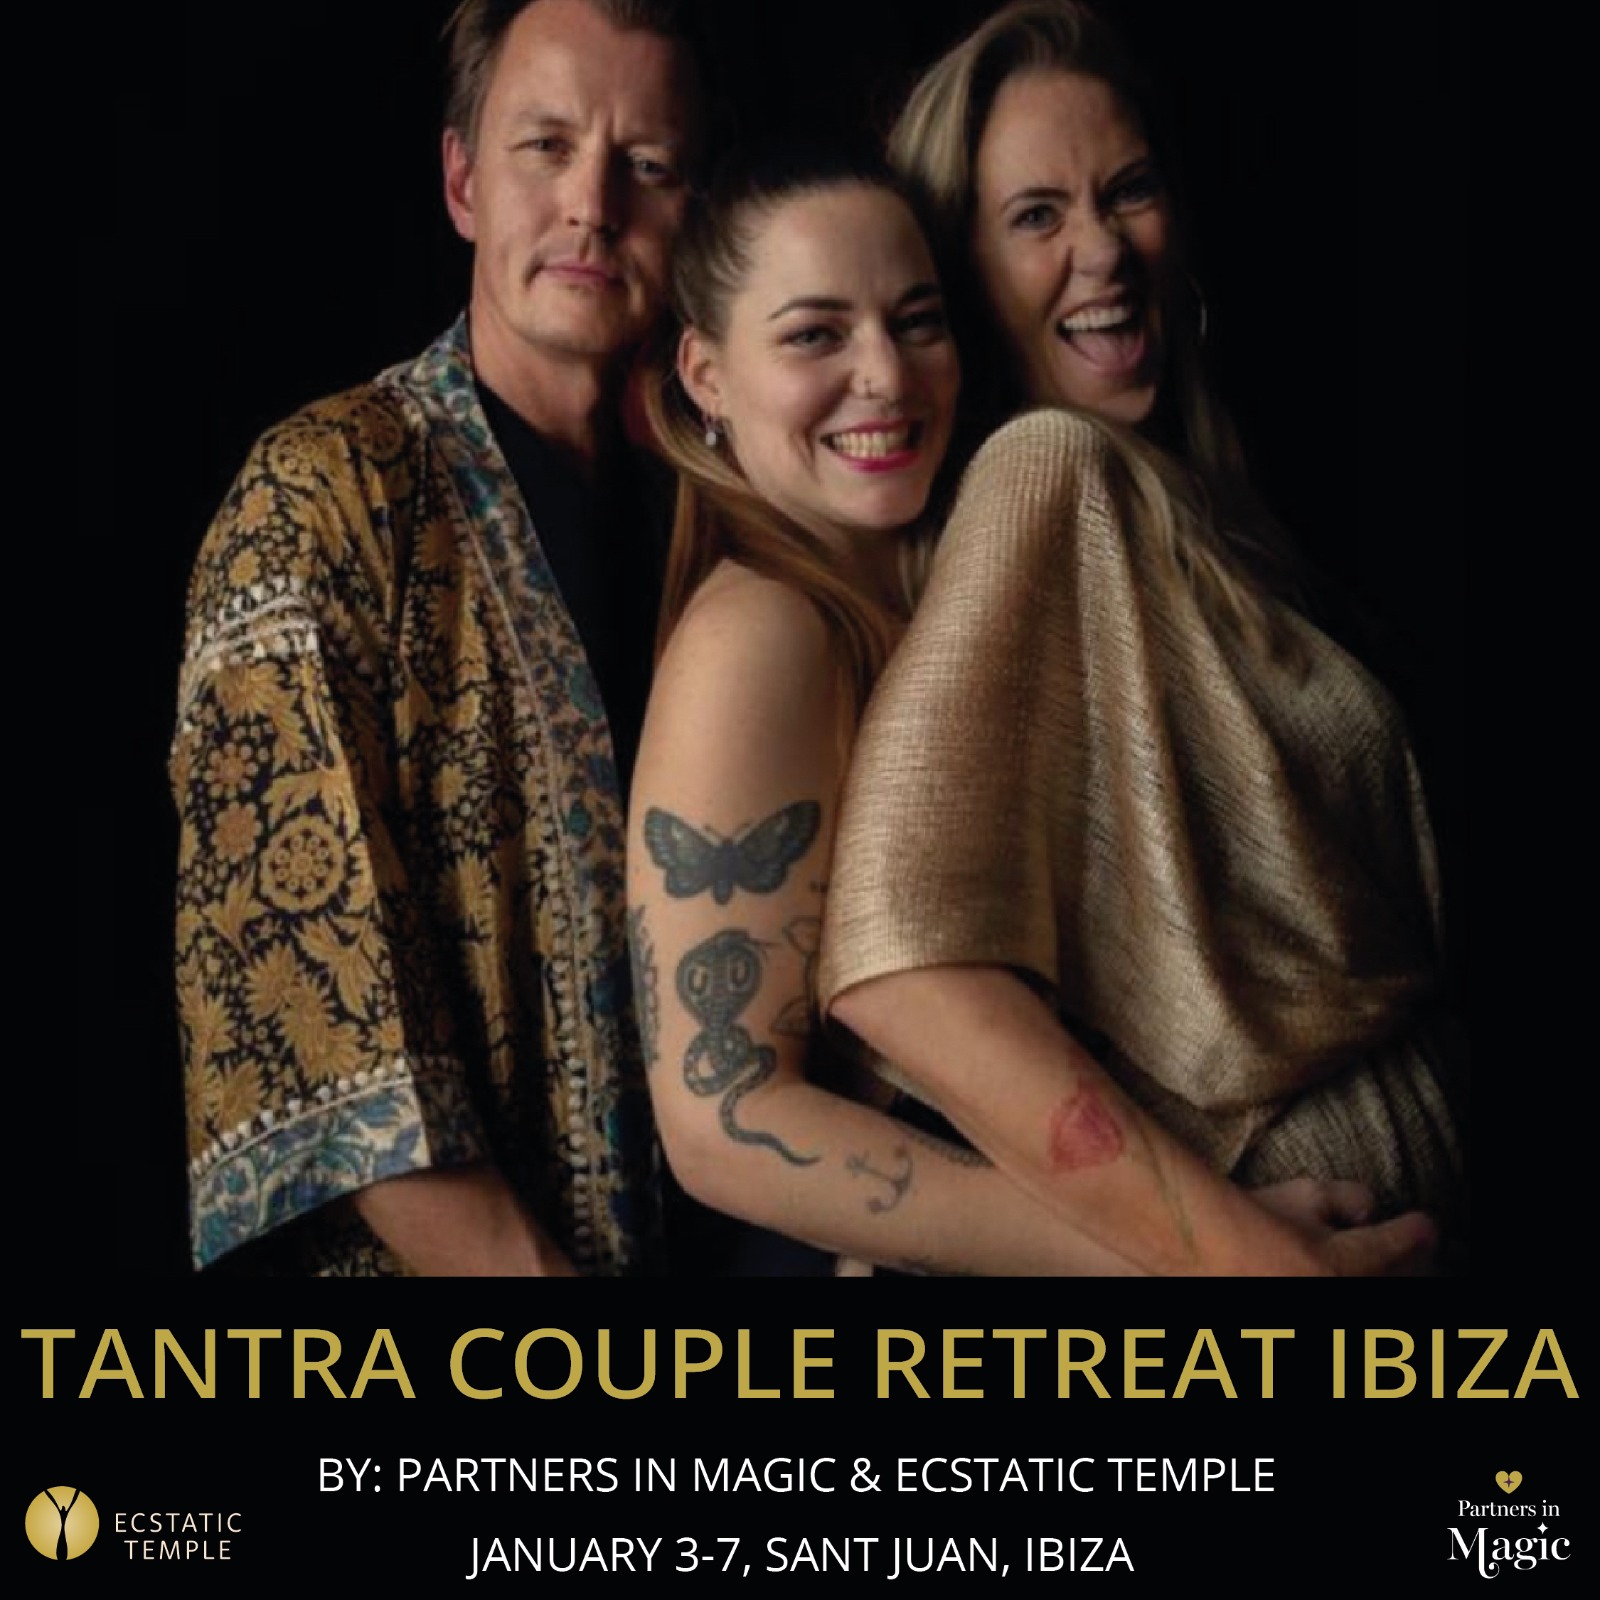 Tantra Couple Retreat Ibiza